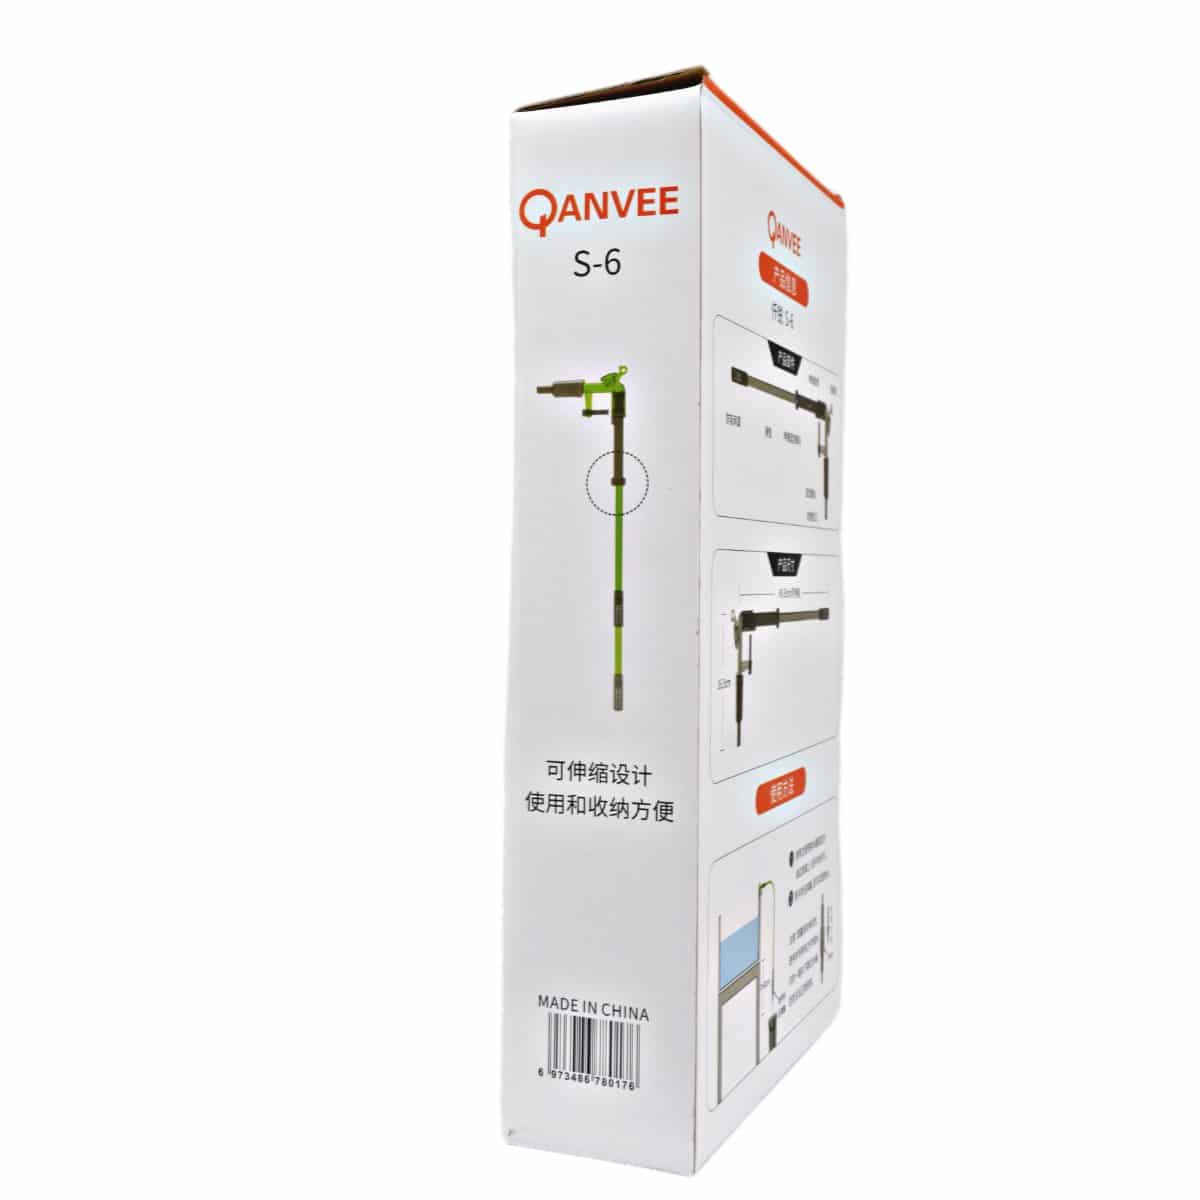 Qanvee Gravel Water Exchanger  S6